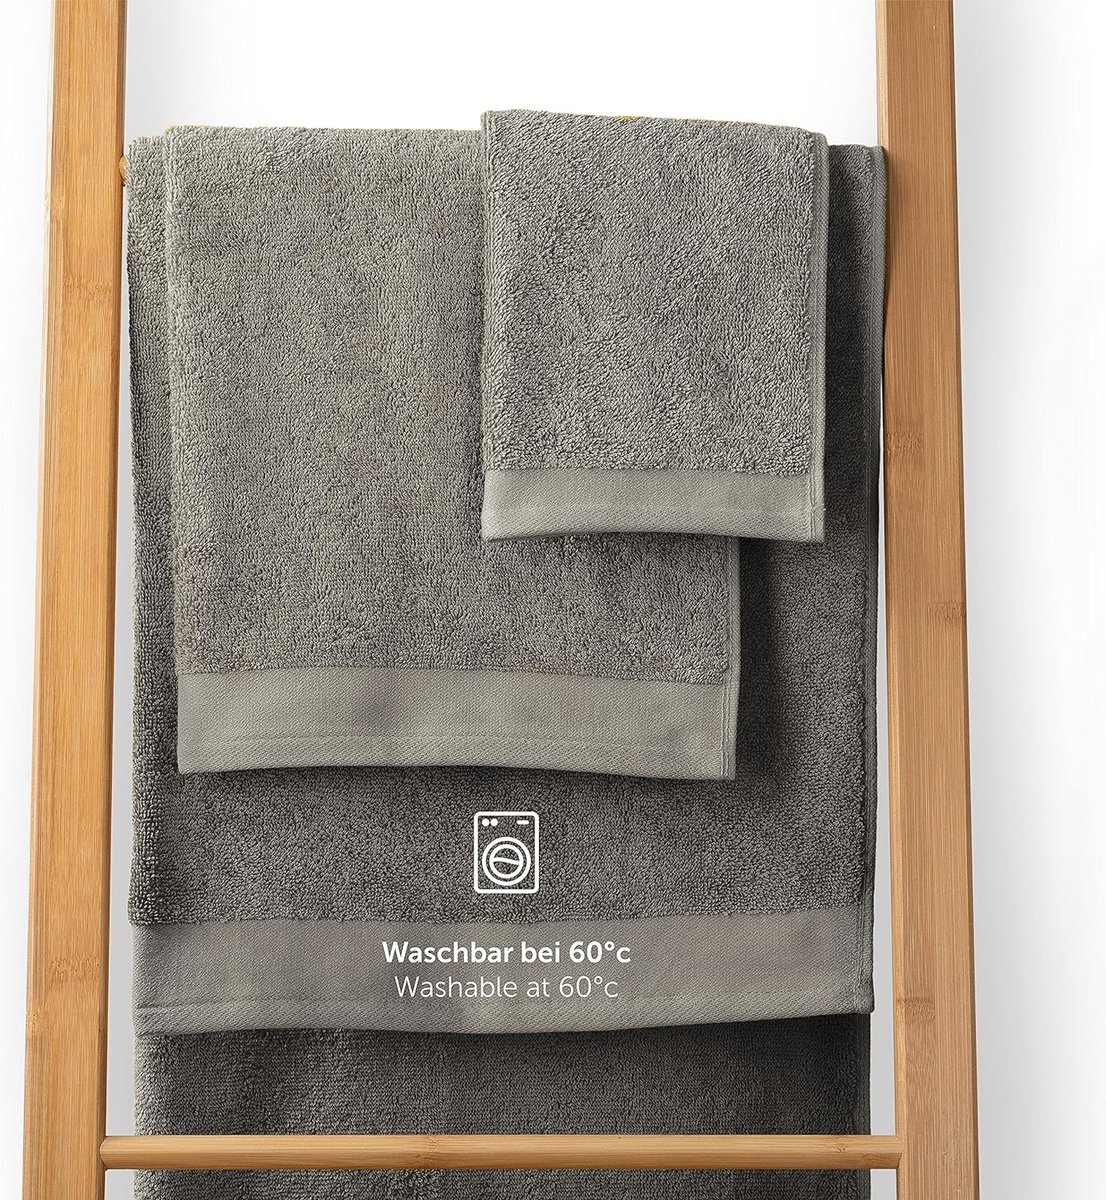 Handdoekenset 2 badhanddoeken 70x140 zacht en absorberend 100% katoen Oeko-Tex 100 gecertificeerd grijs